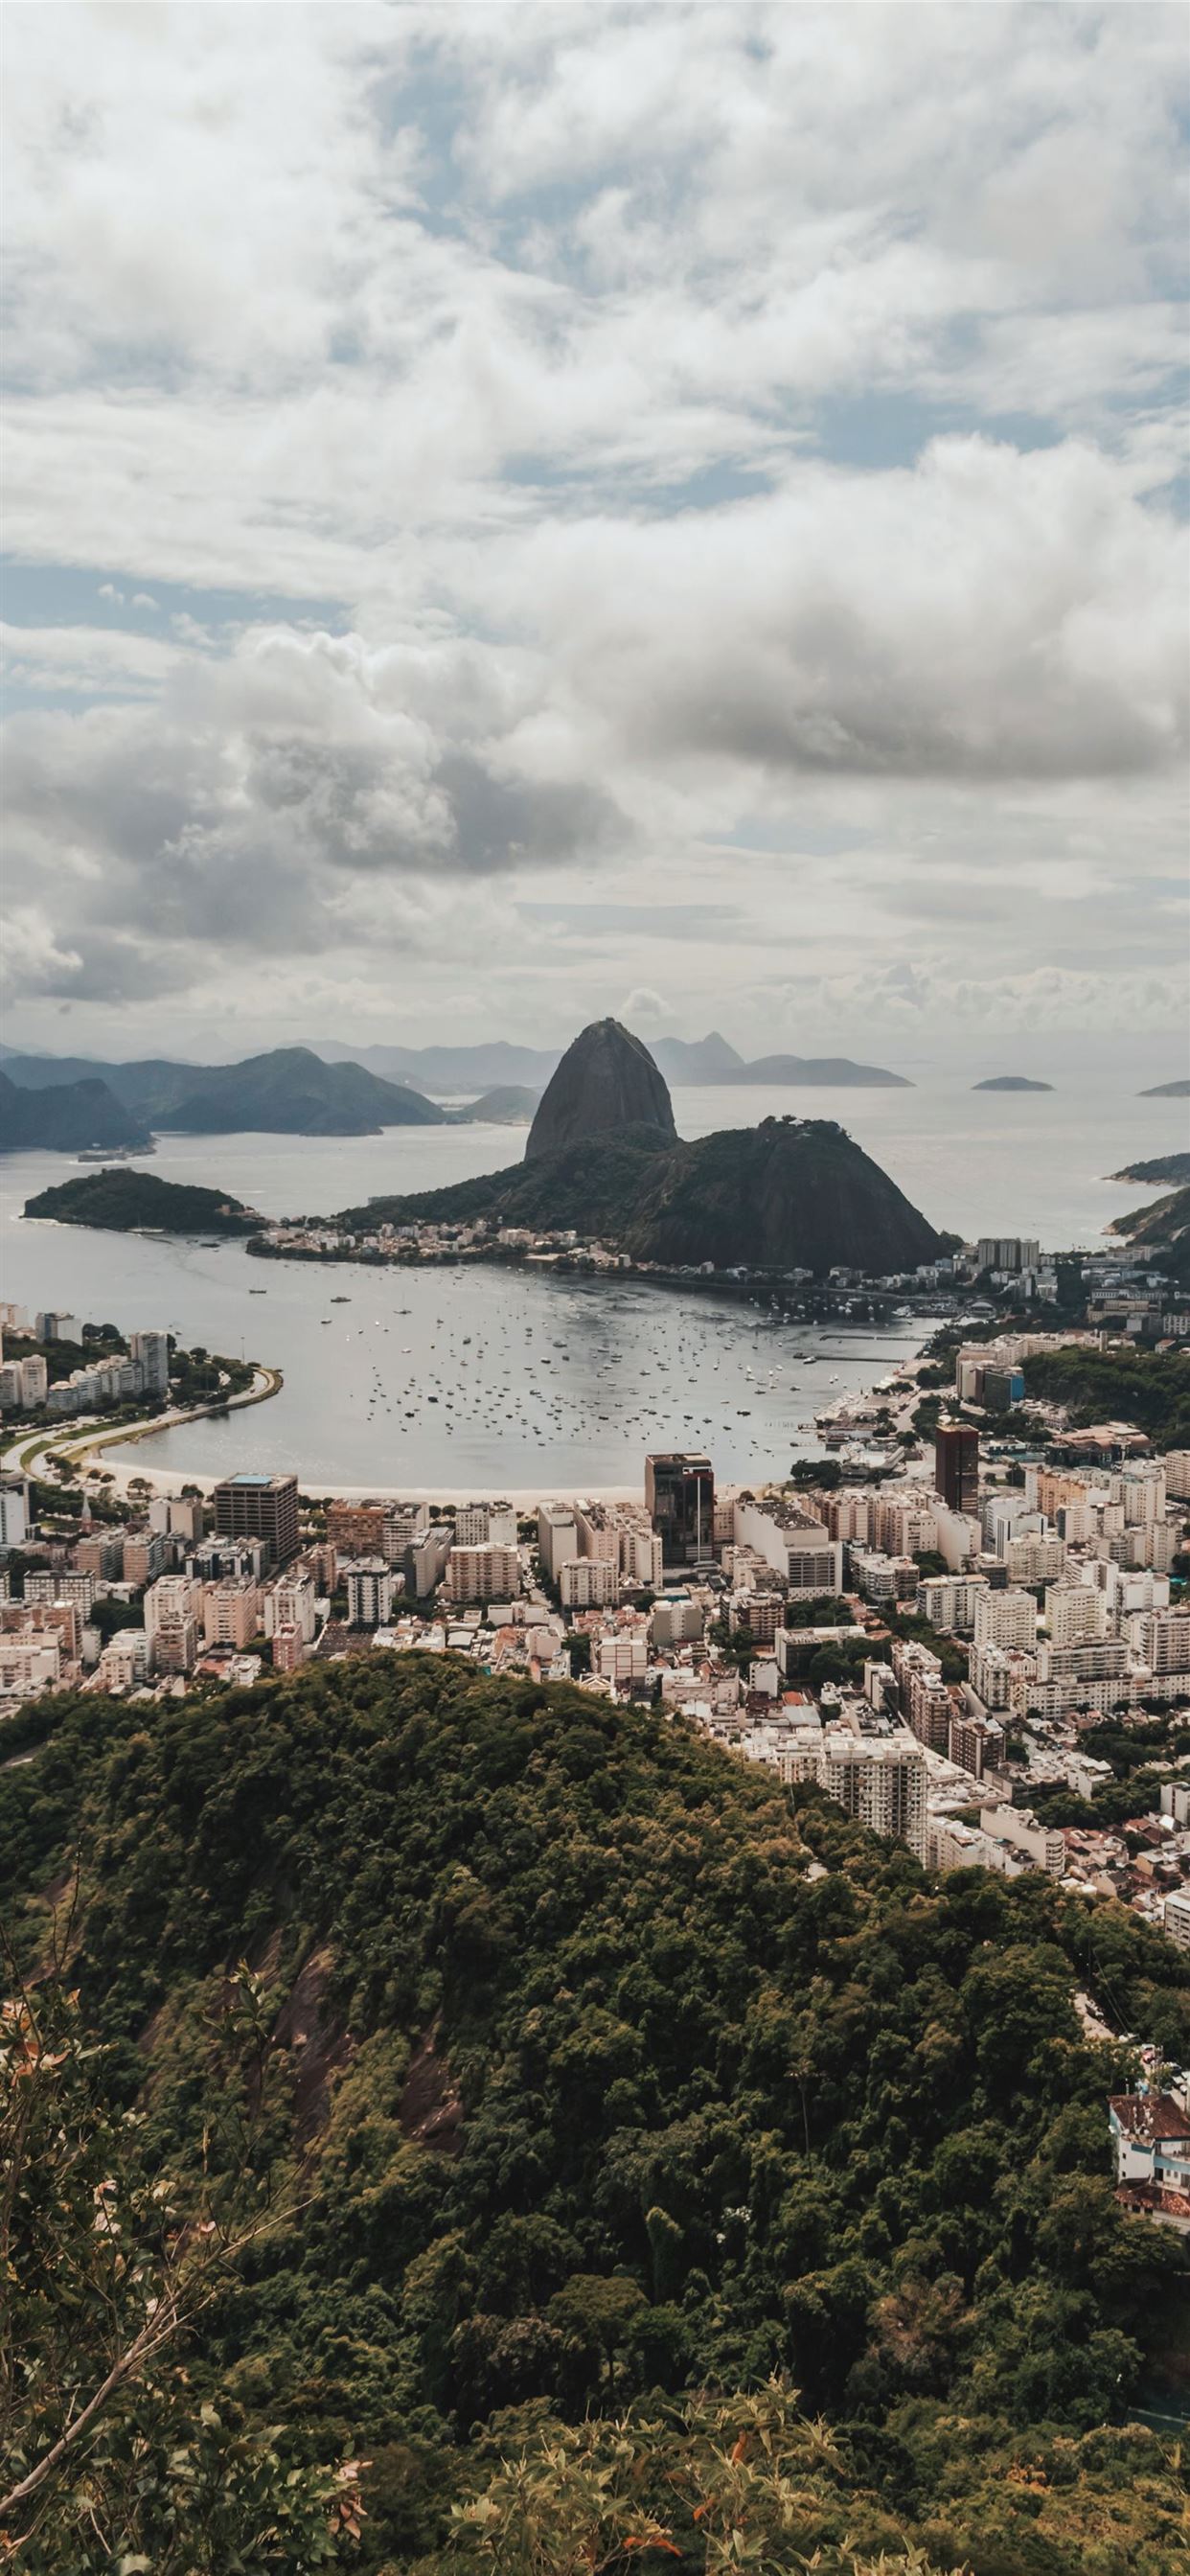 Aerial view of the city of Rio de Janeiro, Brazil - Jesus